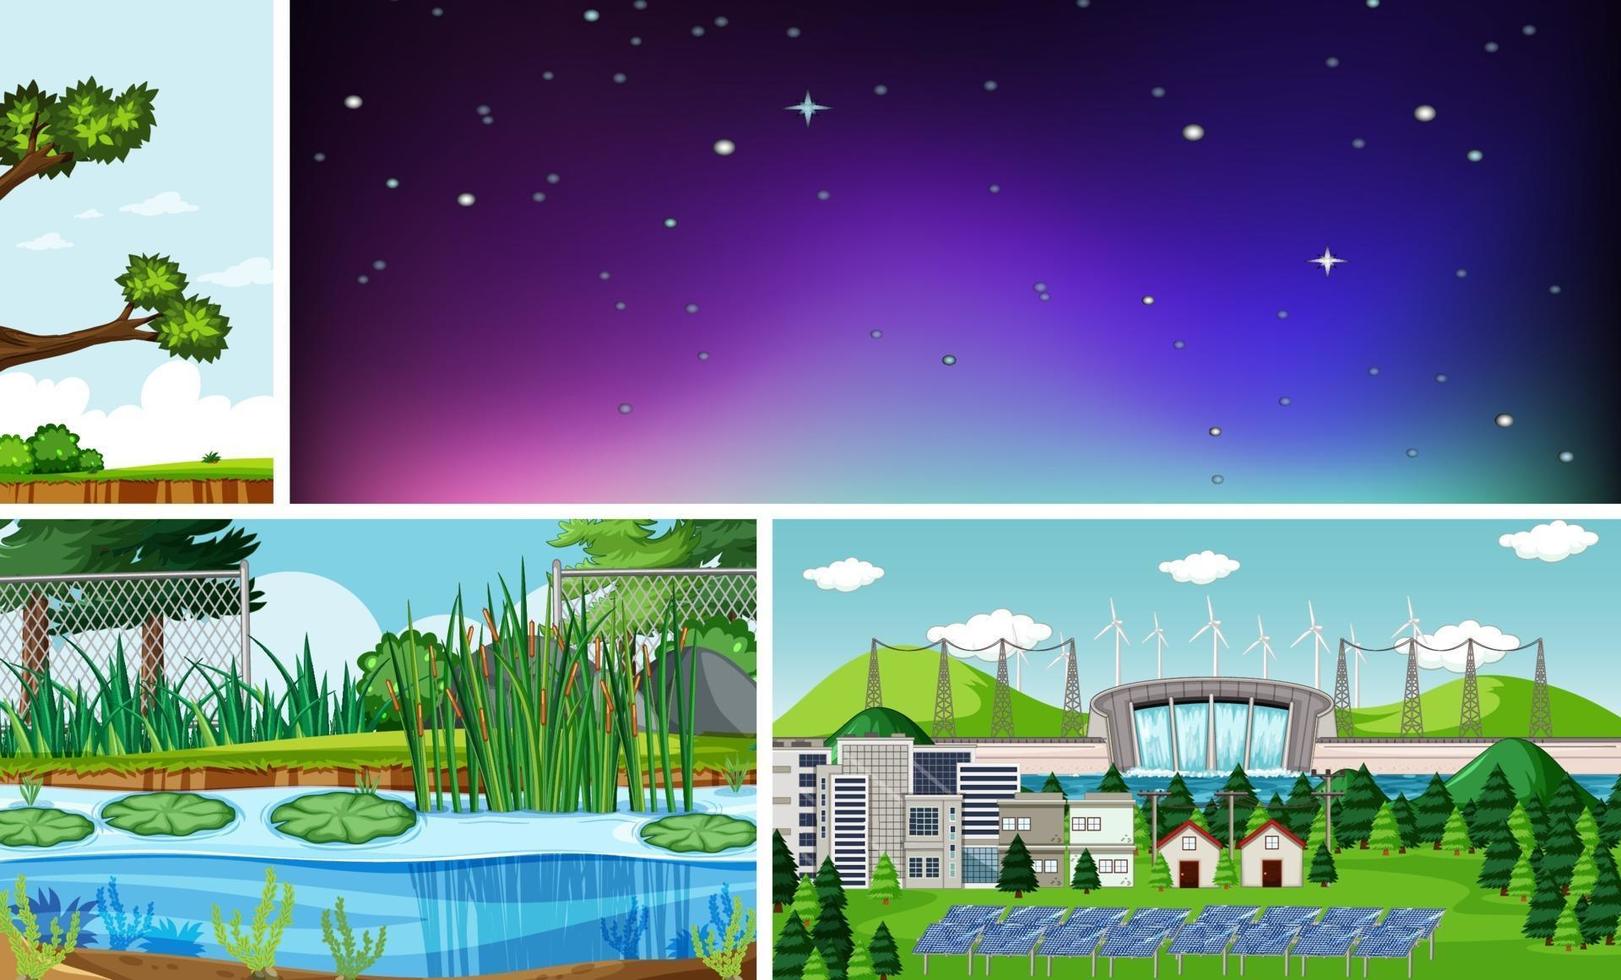 cuatro escenas diferentes en estilo de dibujos animados de entorno natural vector